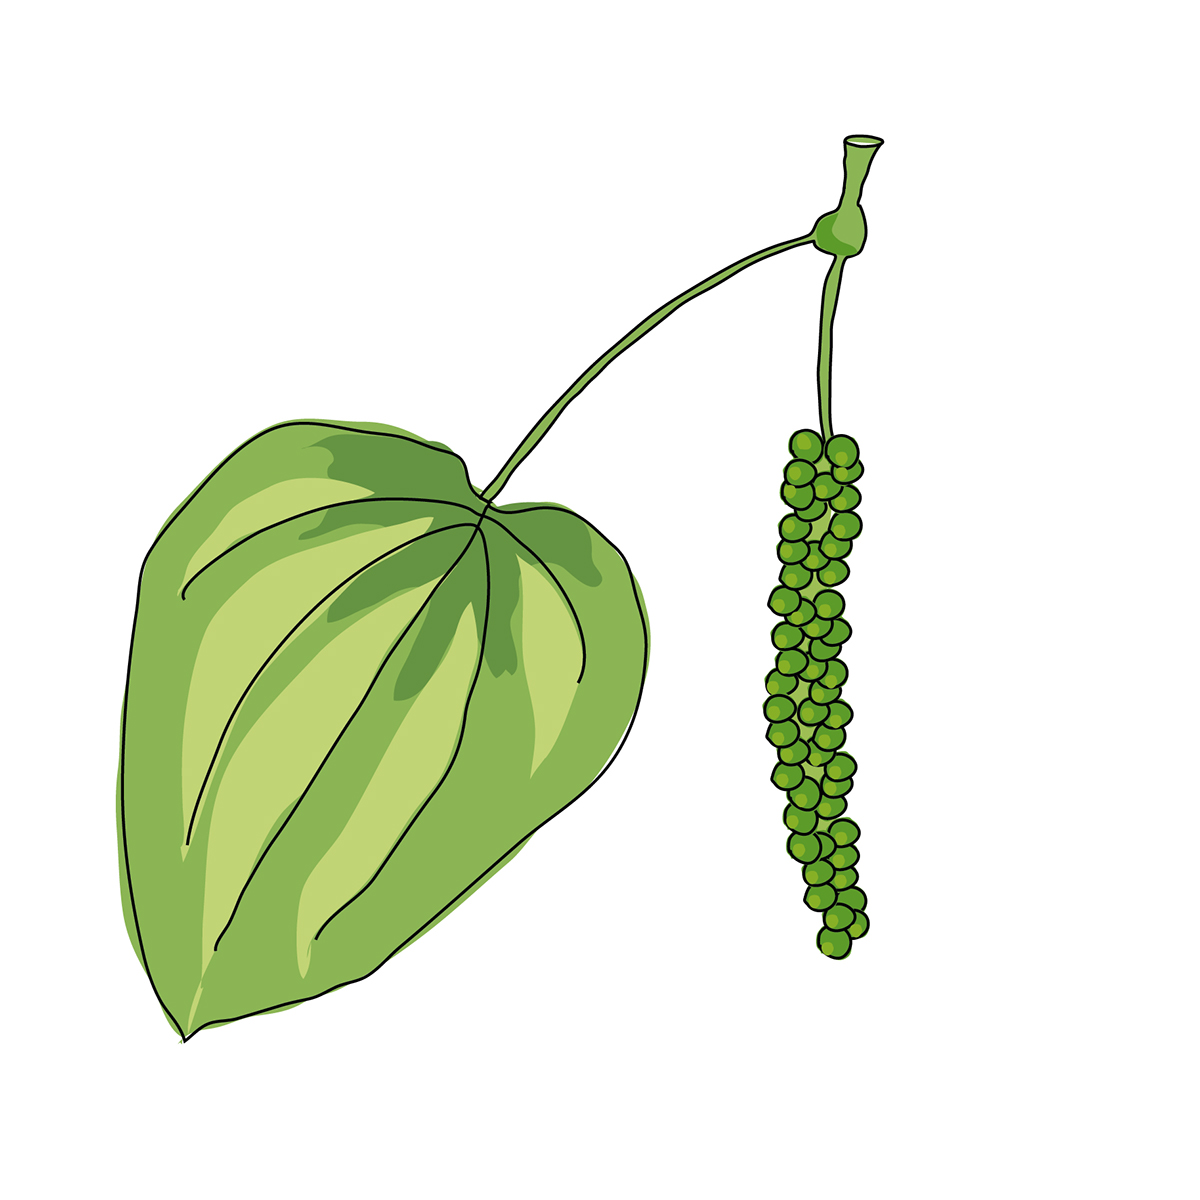 gewürze zeichnungen exotisch samen blätter Geschmack spice rolling pin taste leafs